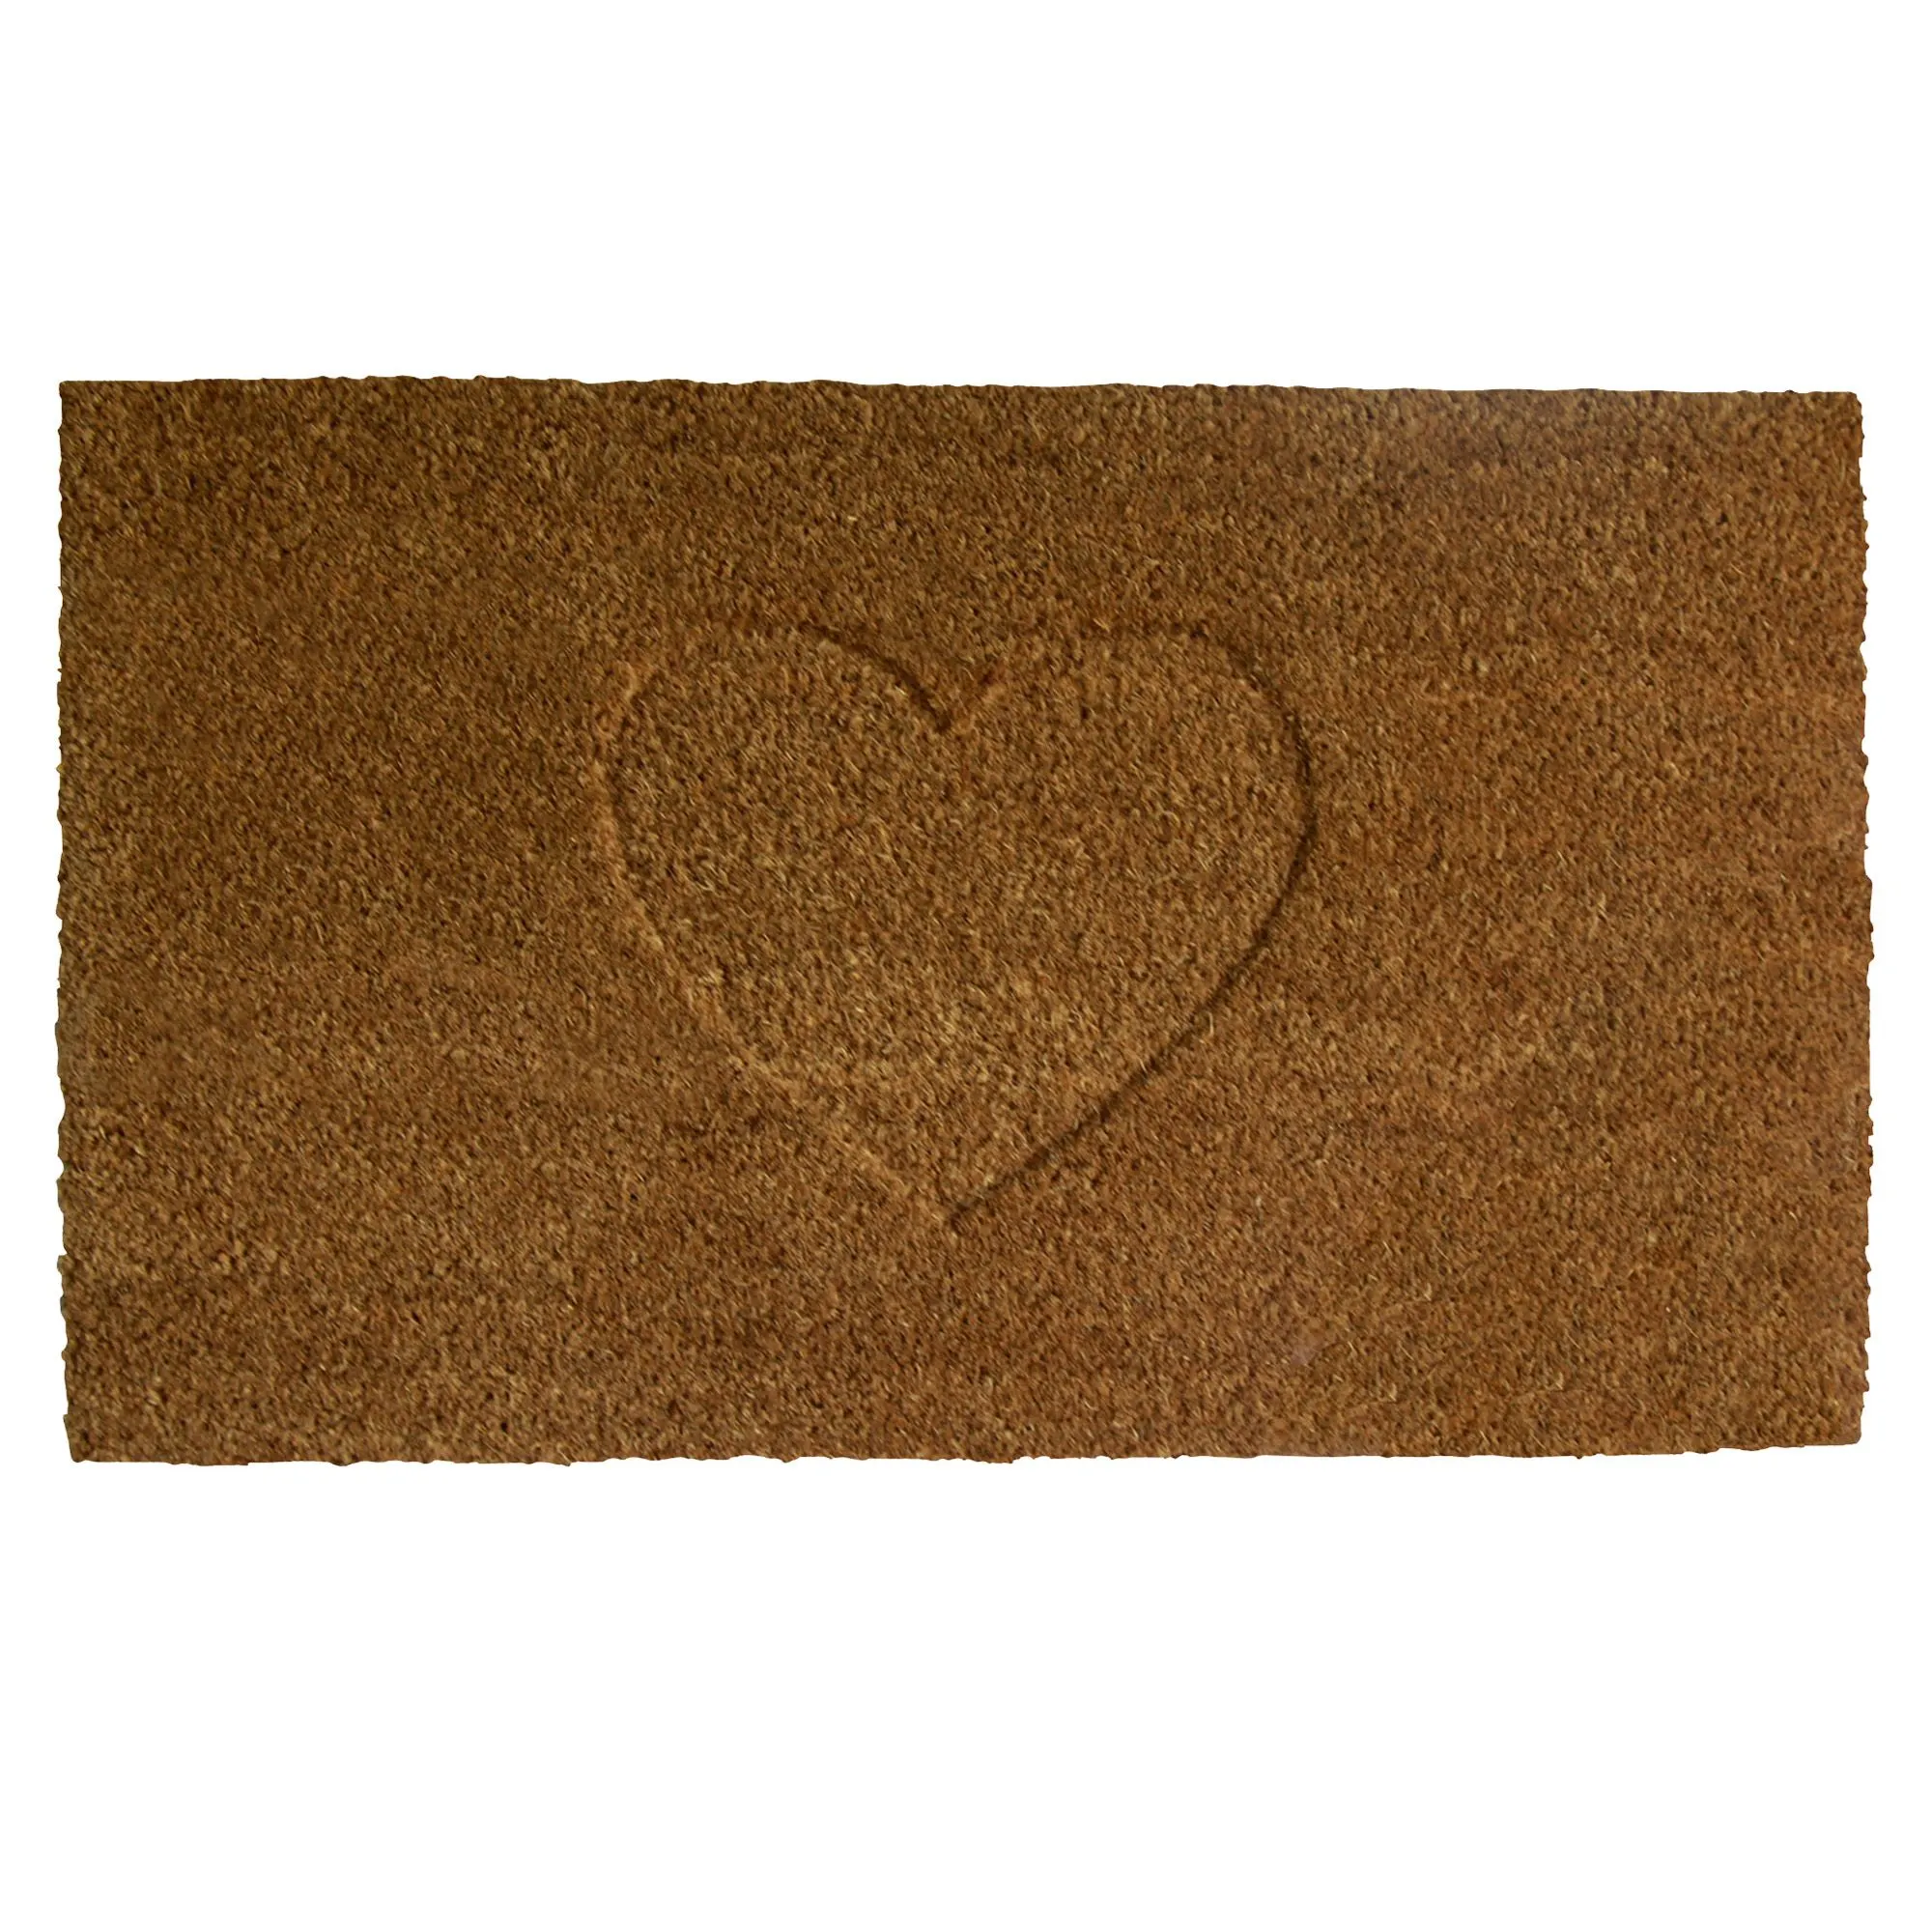 Colours Rudia Heart Natural Coir Door mat (L)0.75m (W)0.45m